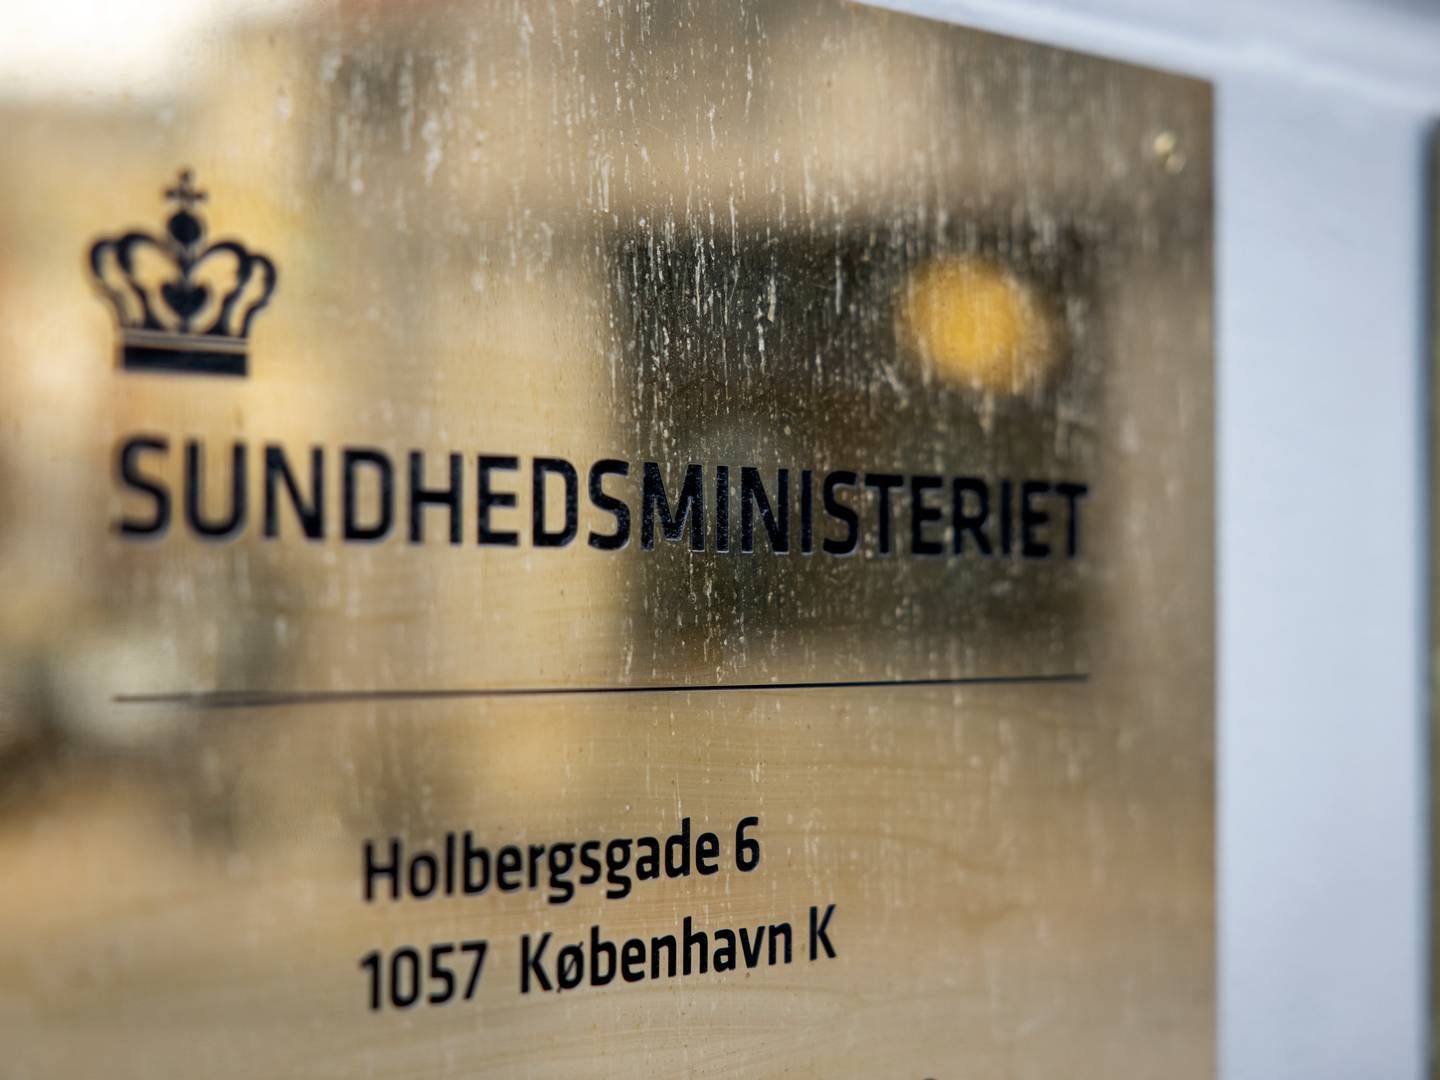 Rådgiveren afløser Magnus Ulvemann, der efter få måneders ansættelse i april annoncerede, at han havde besluttet at stoppe i ministerens team af særlige rådgivere. | Photo: Jesper Houborg/Ritzau Scanpix